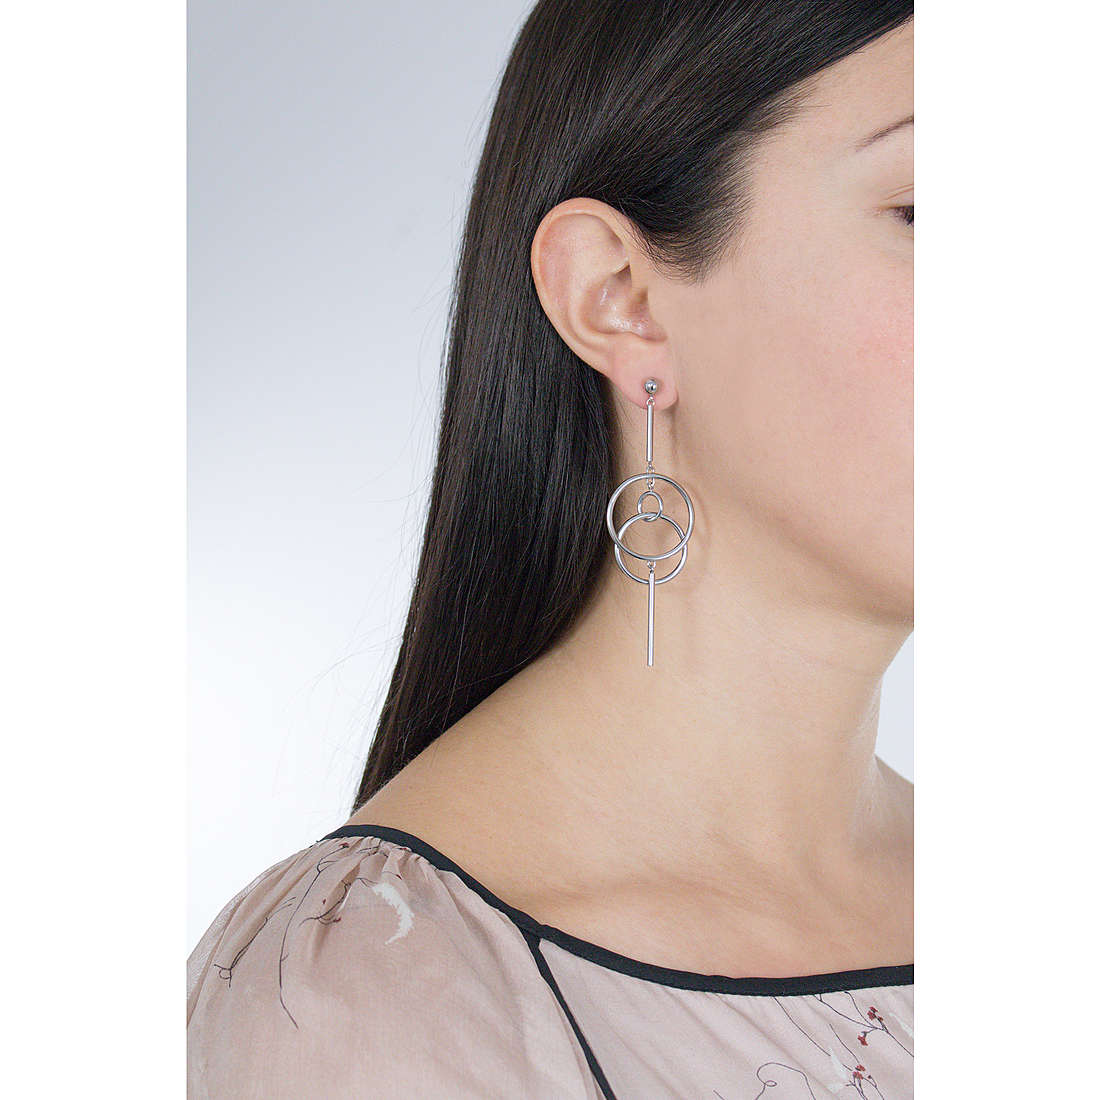 Morellato earrings Cerchi woman SAKM14 wearing